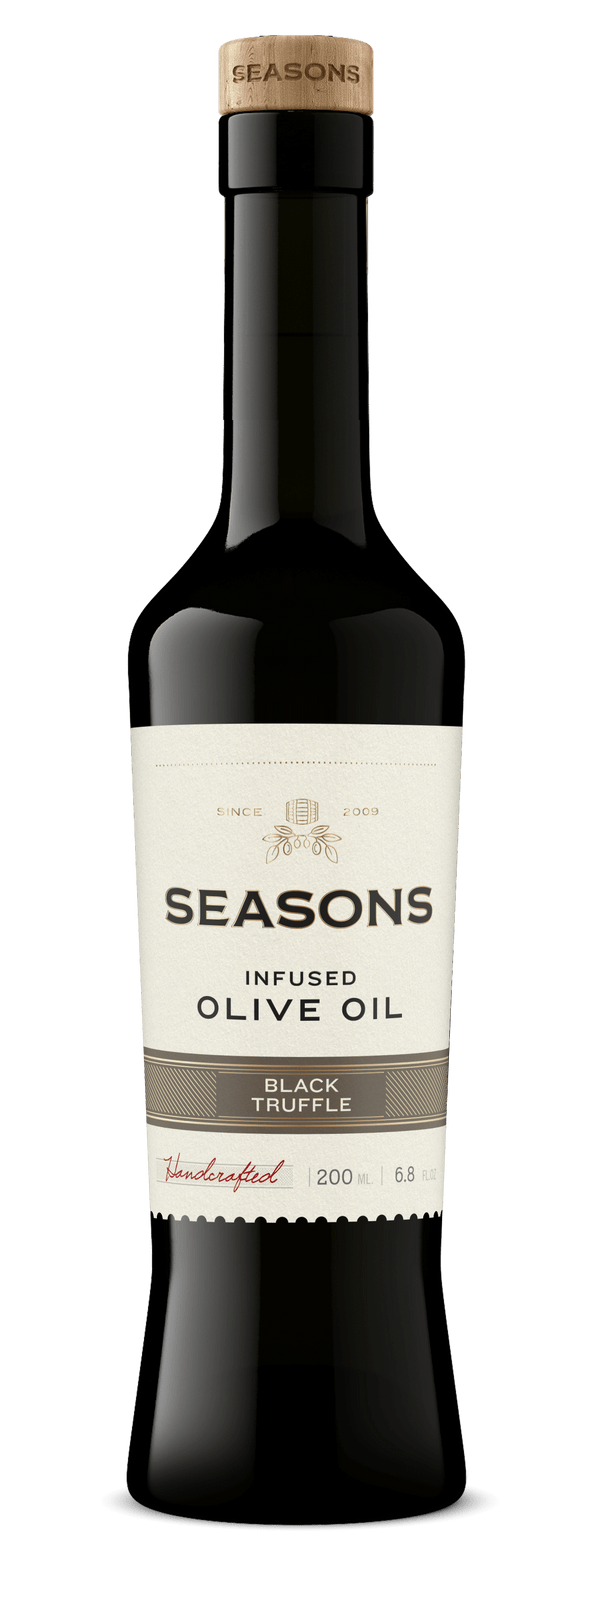 Seasons Infused Olive Oil 200mL Black Truffle